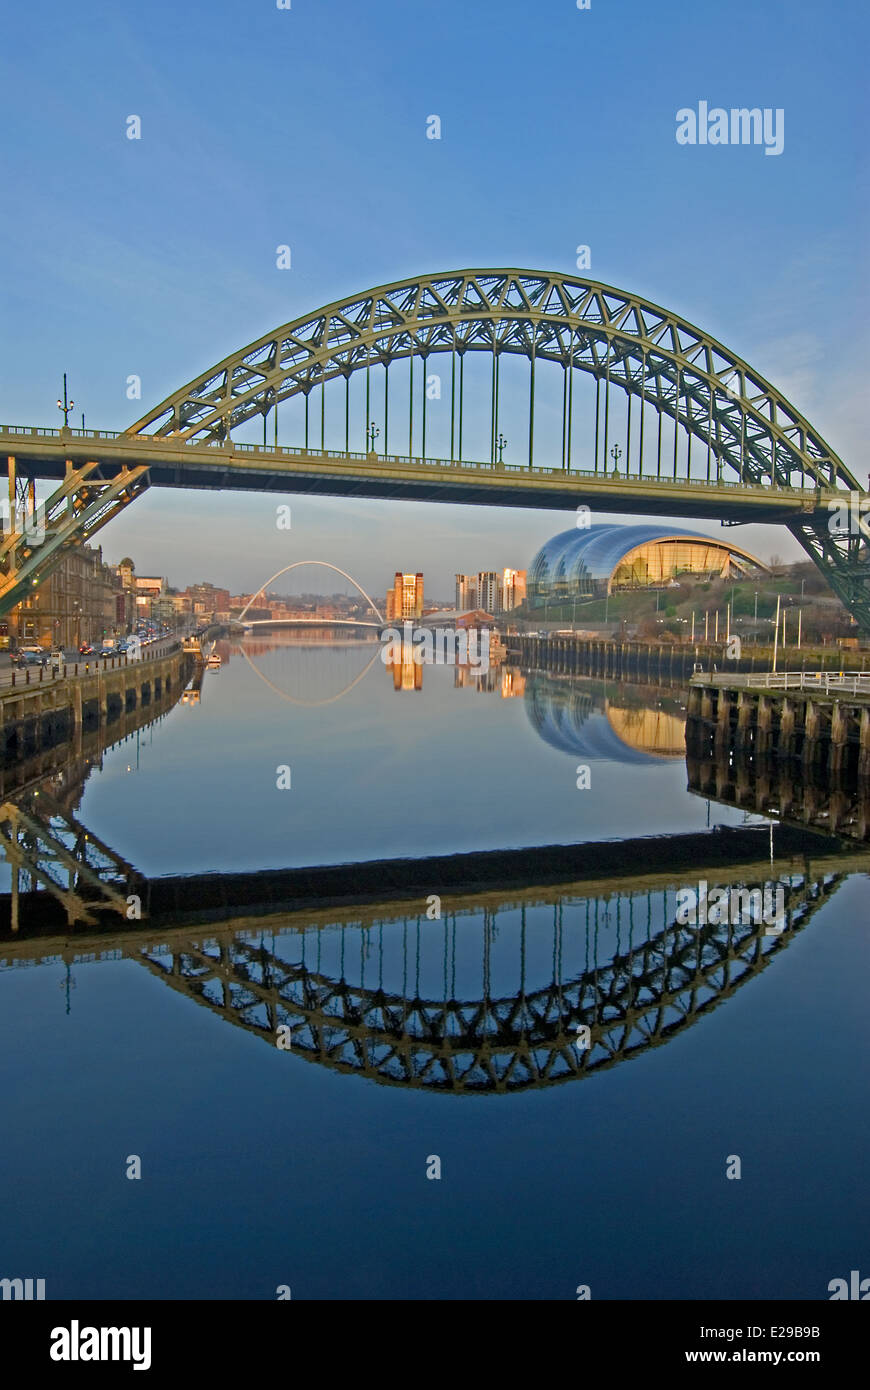 Newcastle upon Tyne und die Tyne Bridge ist eines der Ikonischen North East England's Wahrzeichen, Newcastle Gateshead verbindet mit über den Fluss Tyne Stockfoto